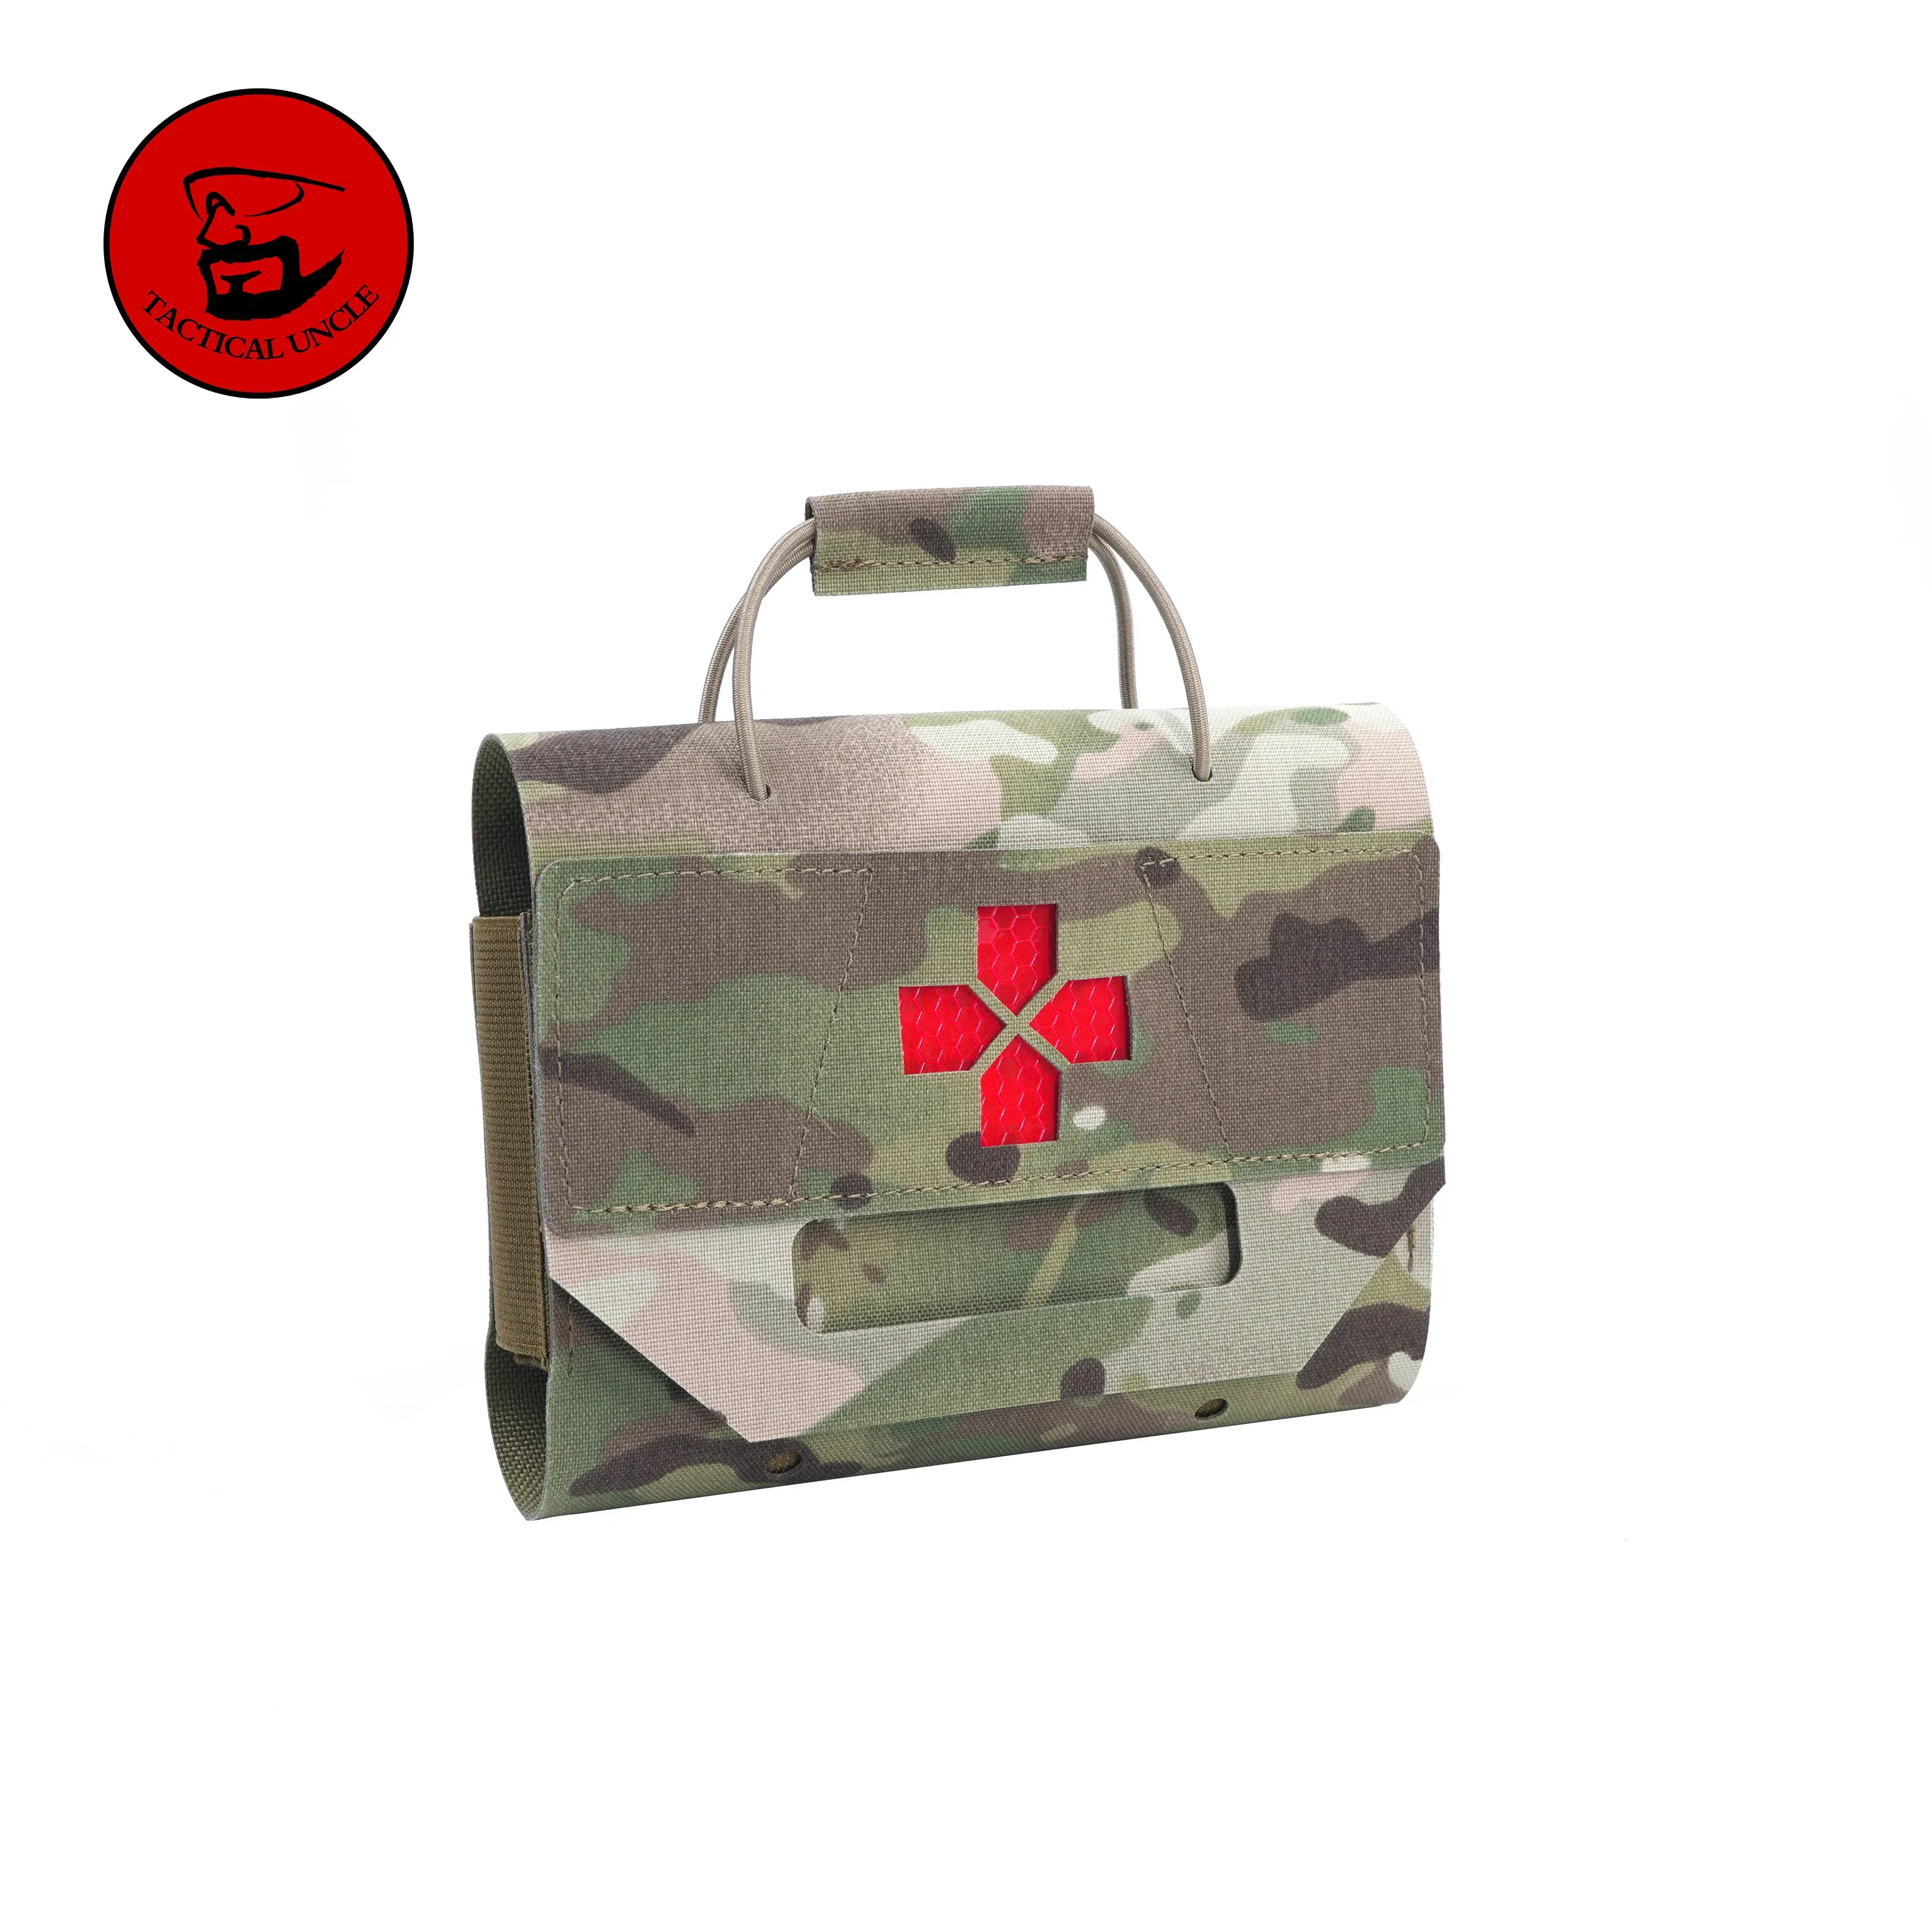 Сумки, тактическая сумка для первой помощи, маленькая сумка для экстренной помощи Edc, армейское военное снаряжение, снаряжение для кемпинга, охоты, спорт на открытом воздухе